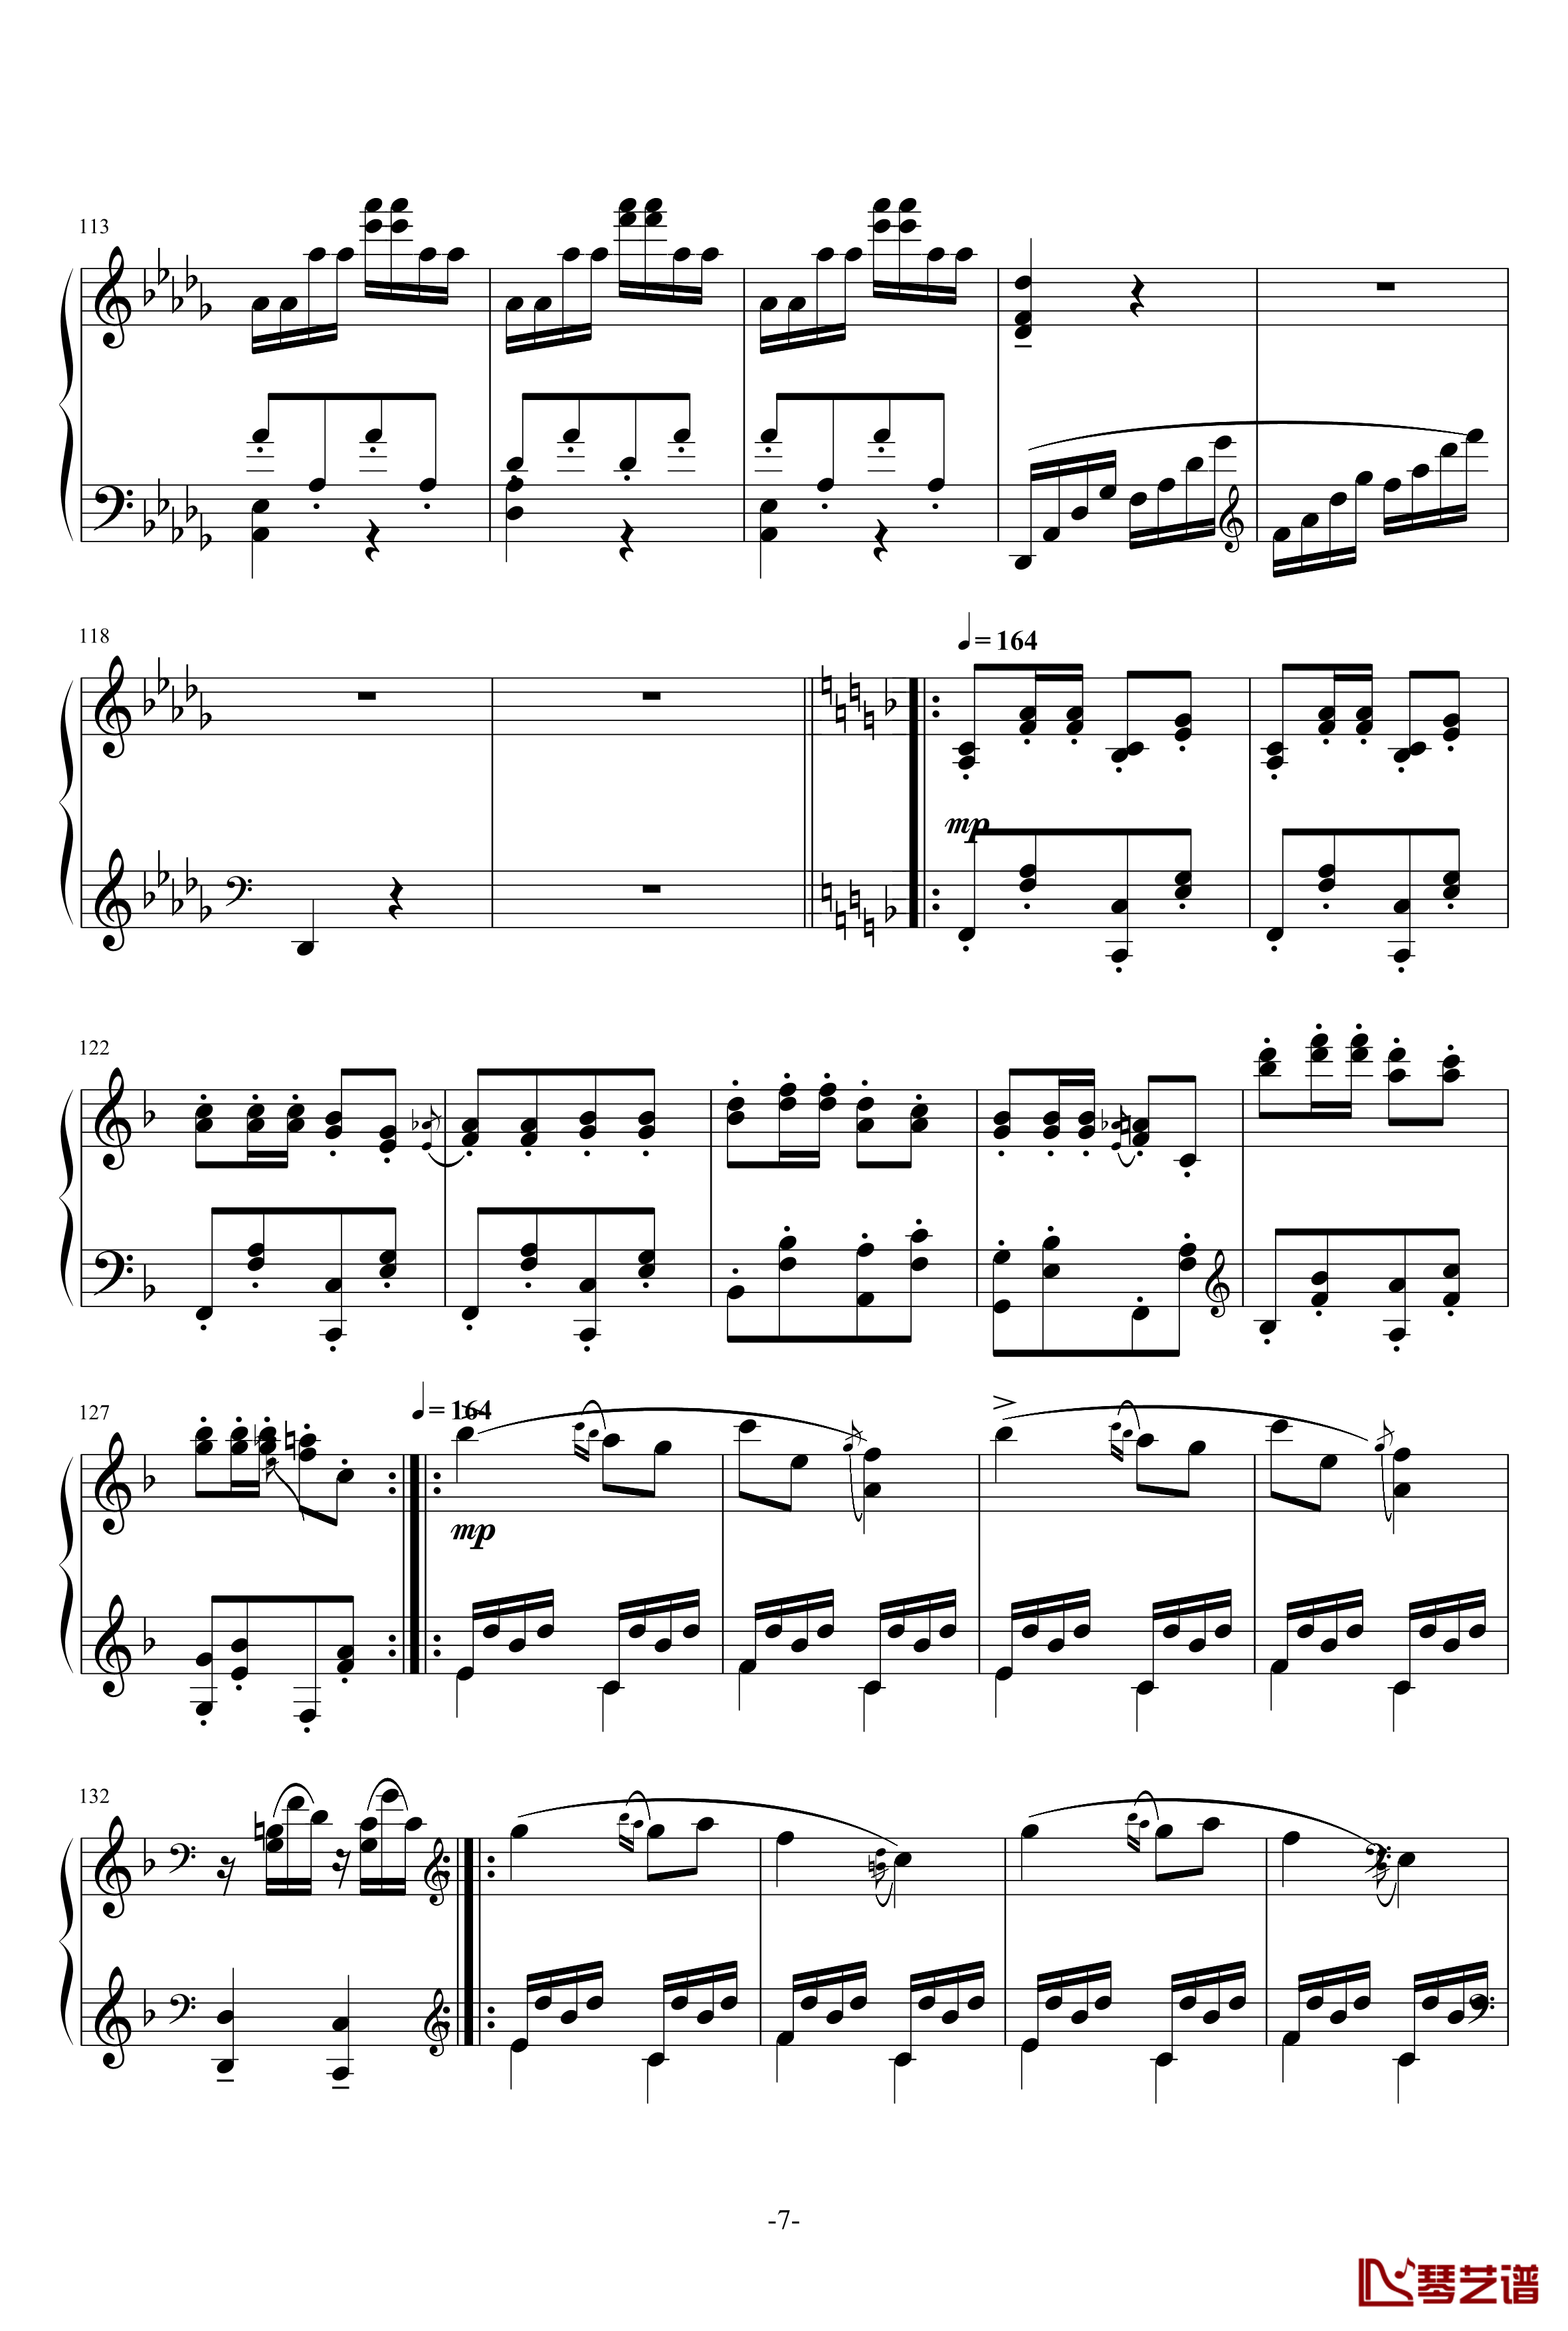 小温狂想曲 3钢琴谱—具有匈牙利狂想曲风格的一曲。—我的代表作-一个球7